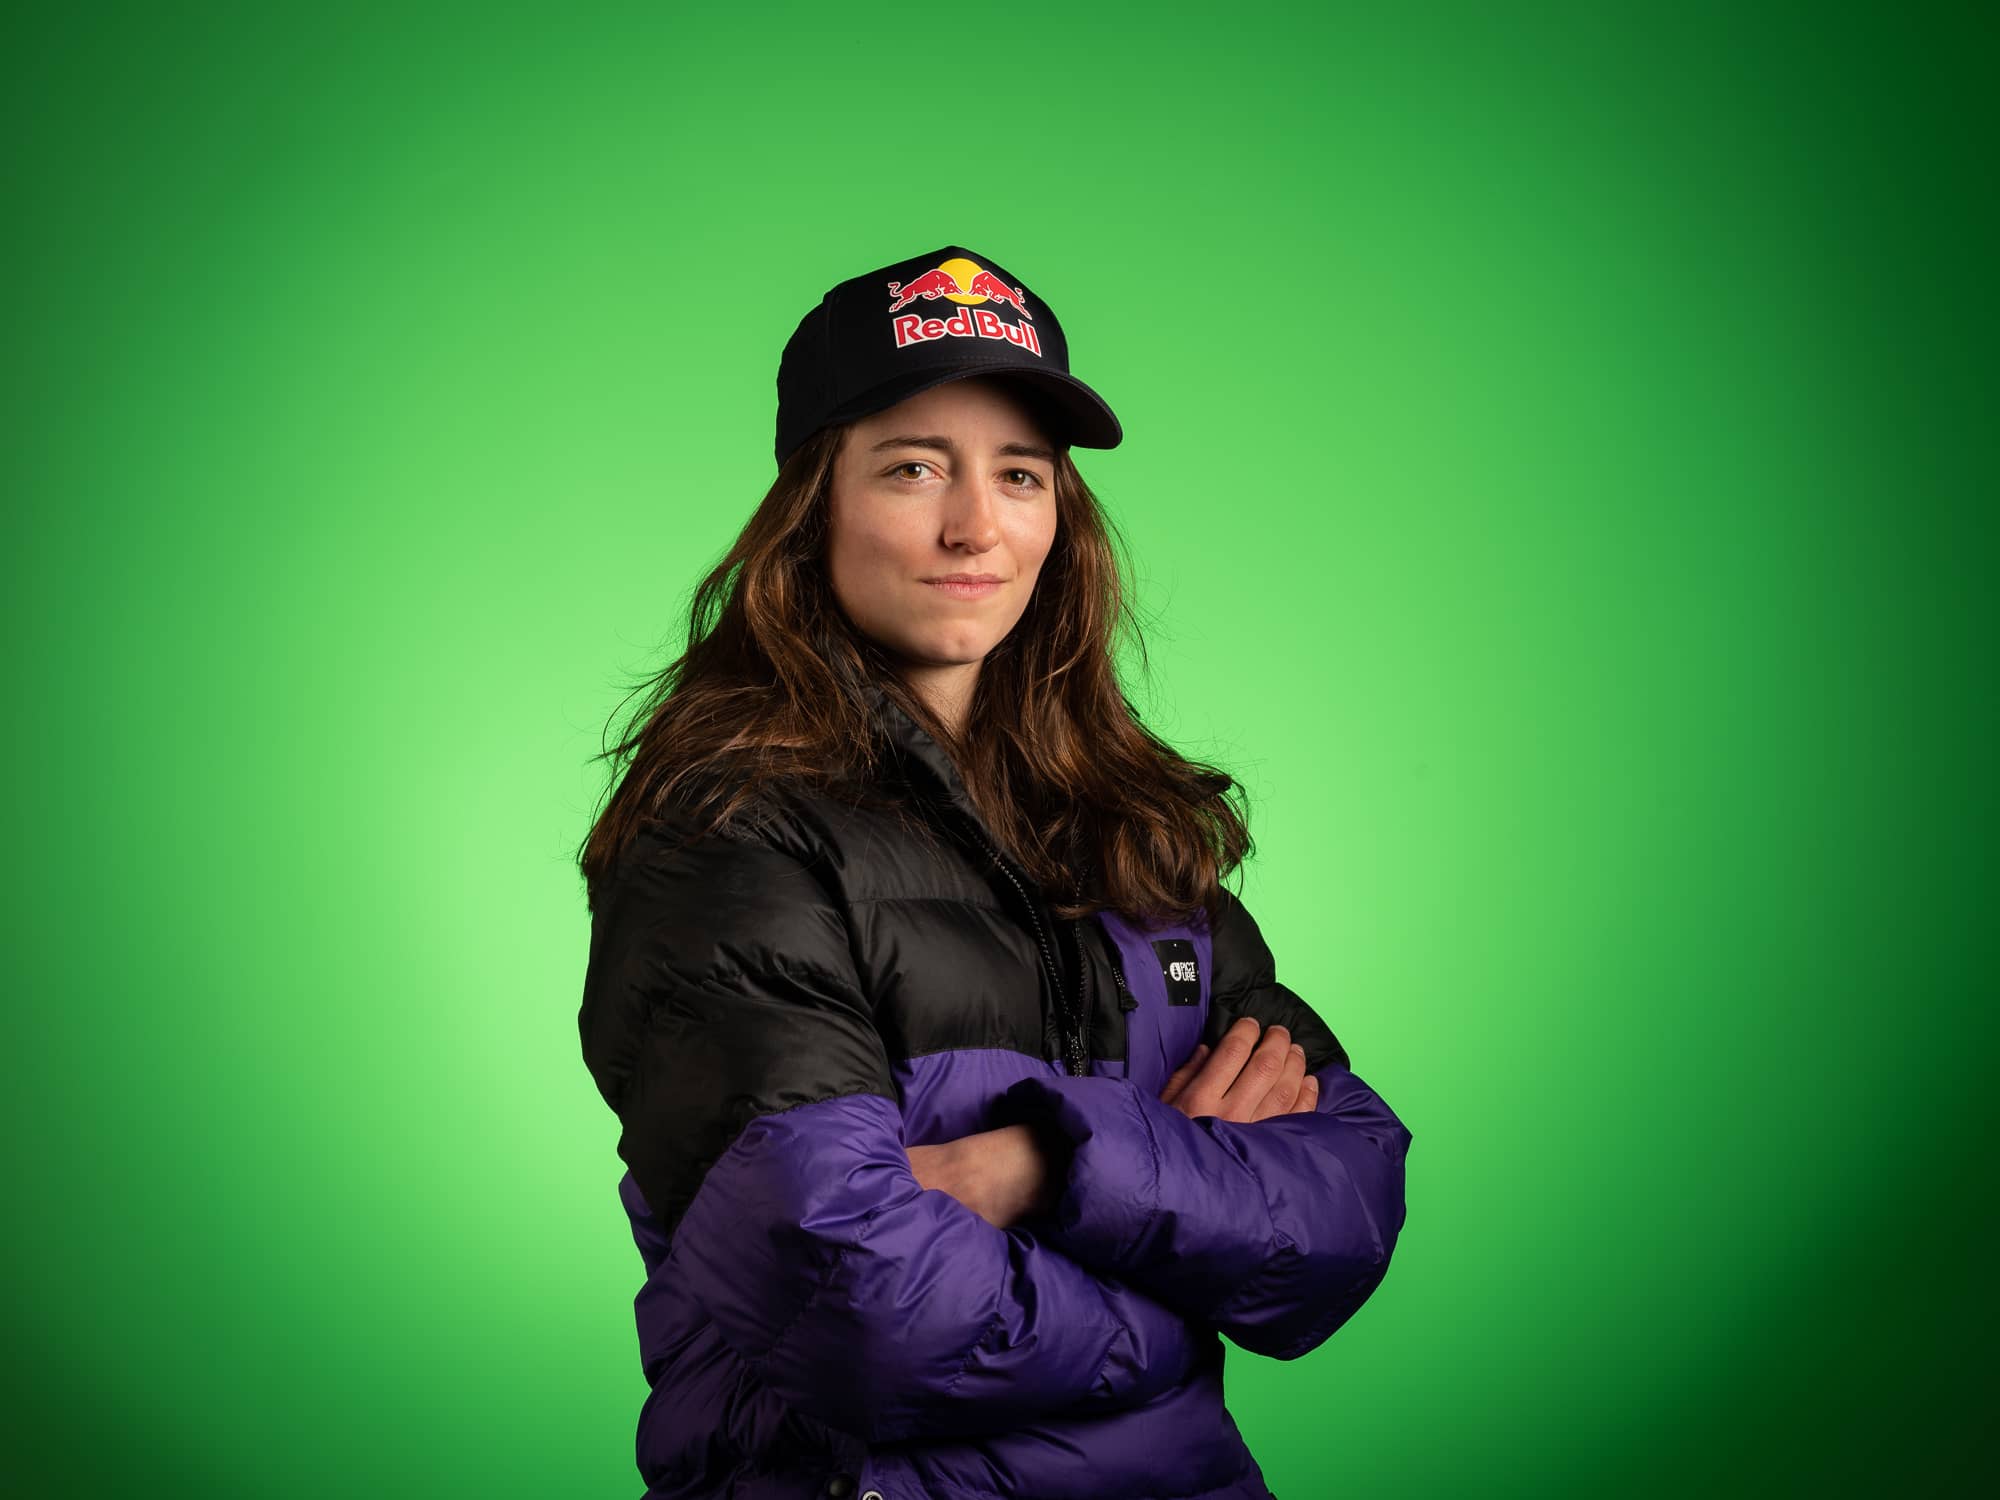 Freestyle Ski Athlete Mathilde Gremaud by STEMUTZ, 26.02.2021